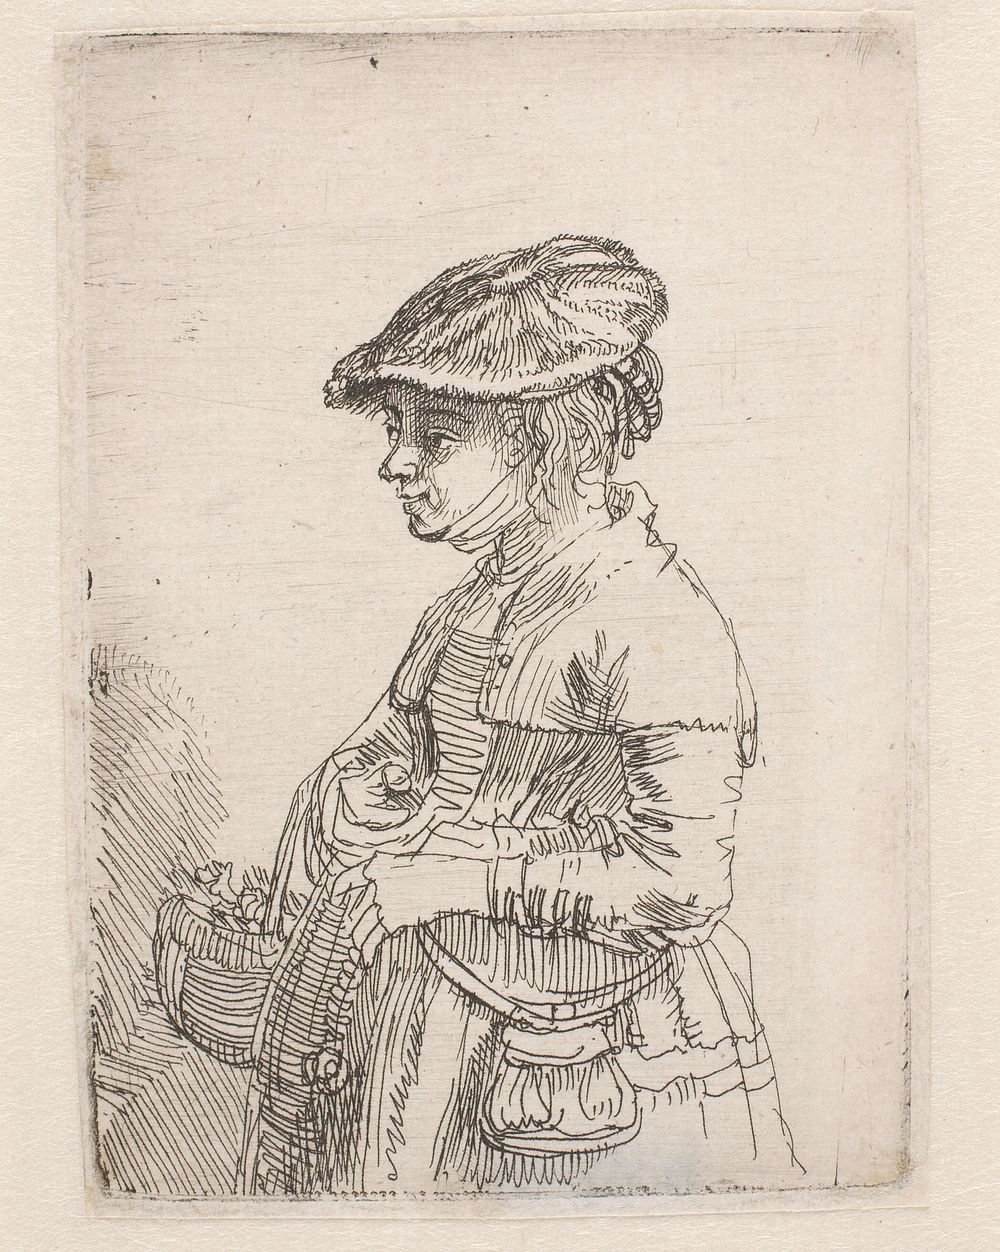 Girl with basket by Rembrandt van Rijn